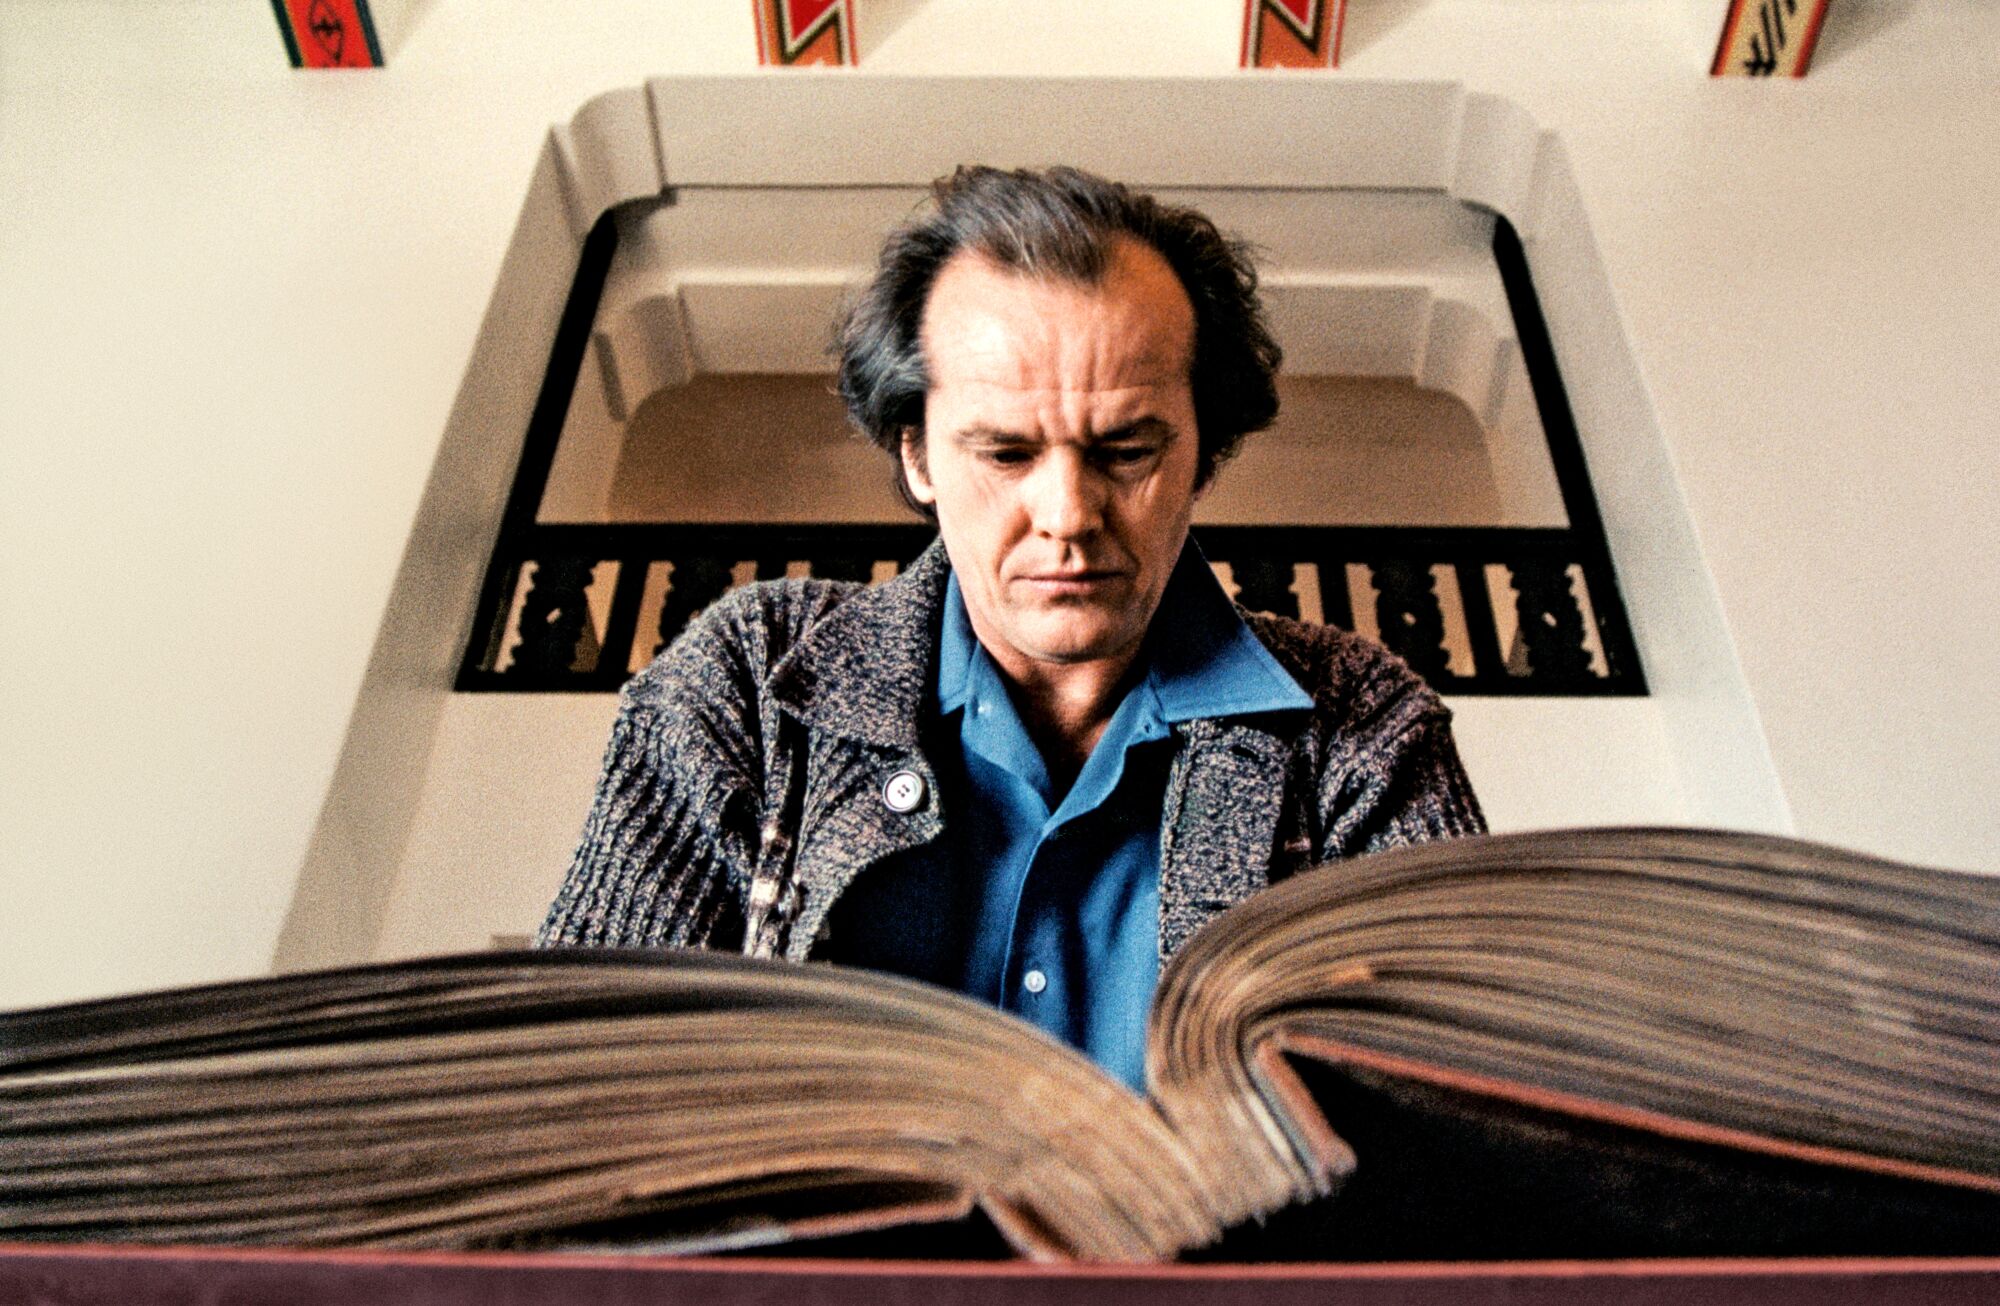 Nicholson, 'The Shining'de hiç kullanılmayan bir çekimde Overlook Hotel'in sefil geçmişini ayrıntılarıyla anlatan bir not defterini inceliyor.